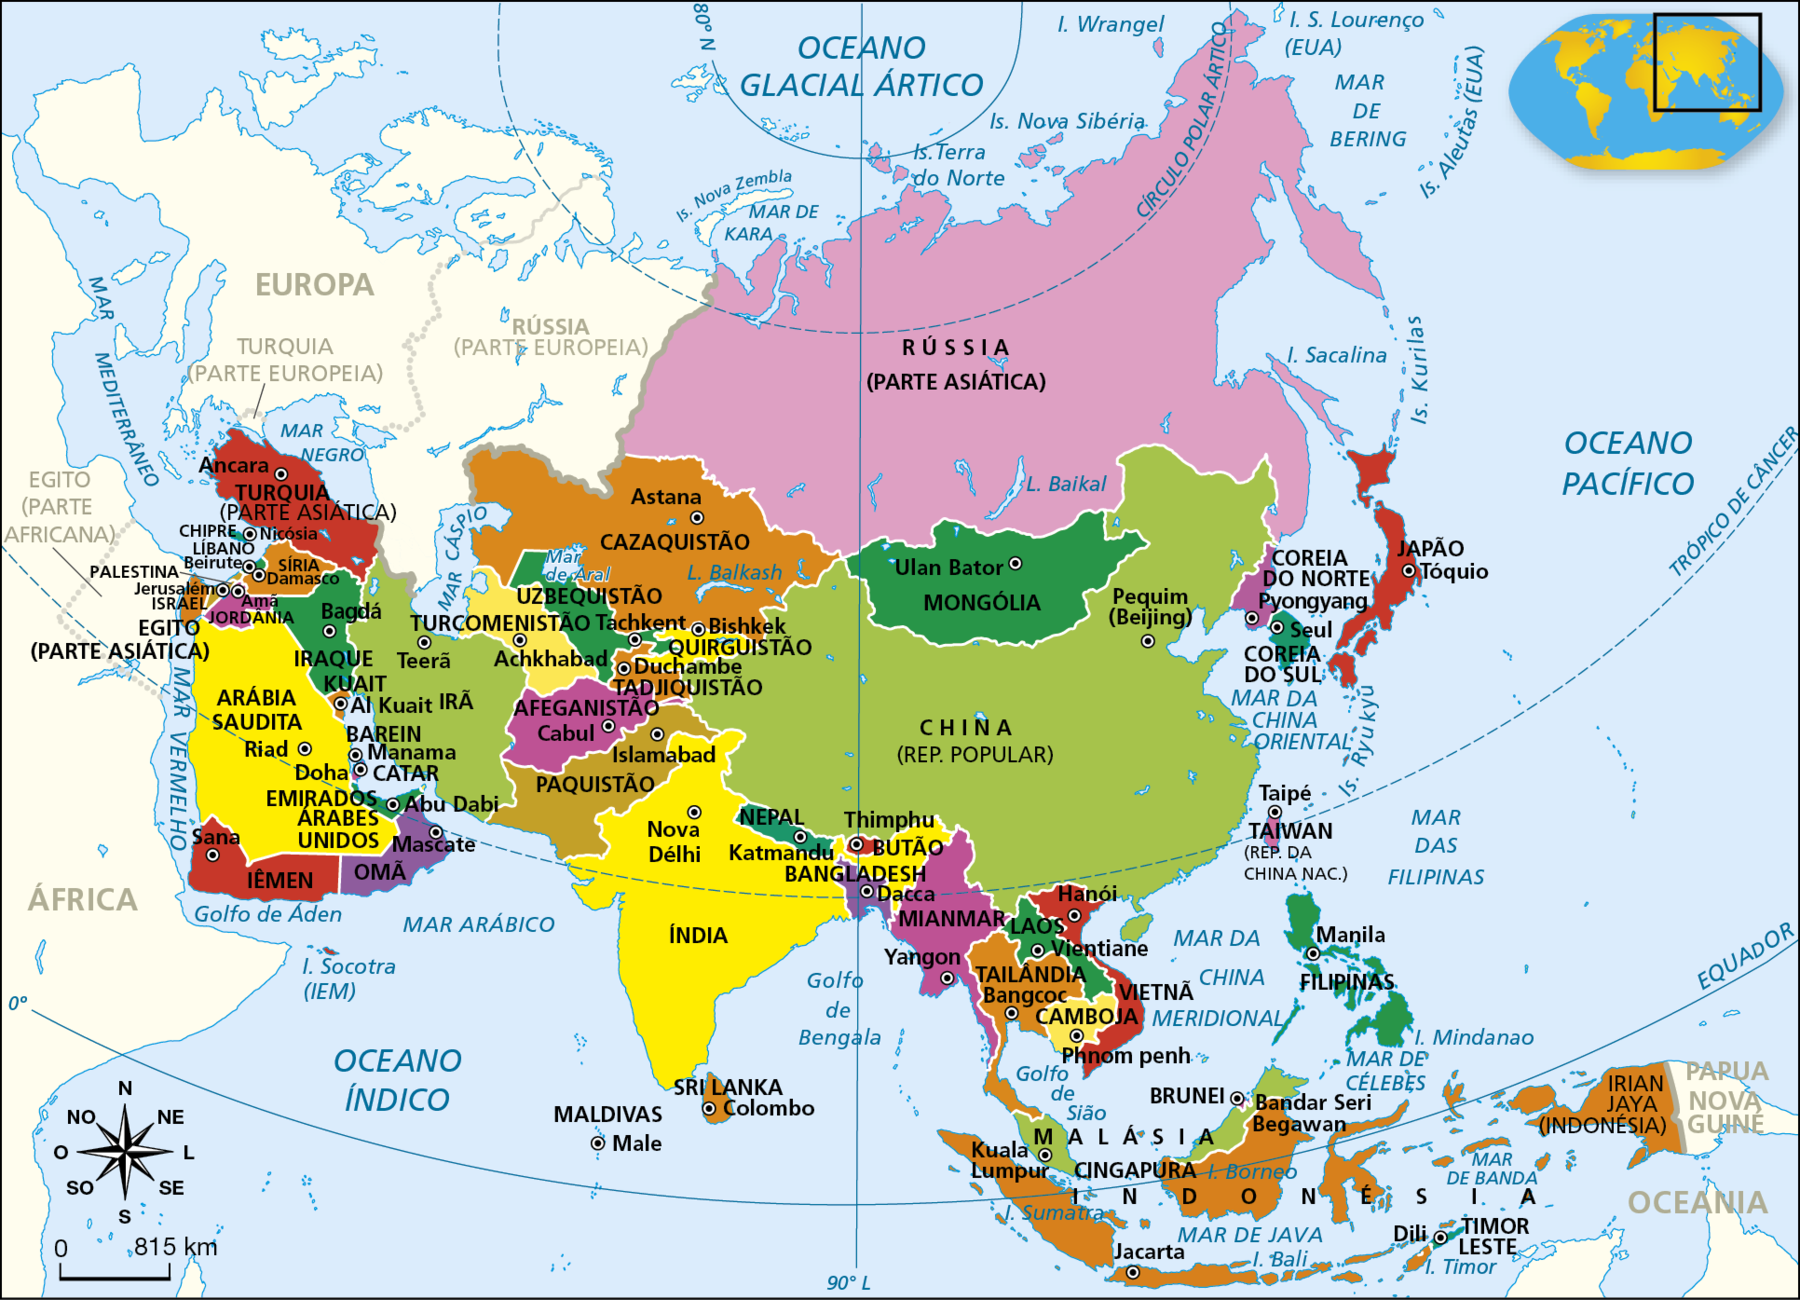 Mapa. Ásia: divisão política. Mapa representando os países do continente asiático e suas capitais. Rússia (parte asiática) Mongólia: Ulan Bator China: Pequim (Beijing) Coreia do Norte: Pyongyang Coreia do Sul: Seul Japão: Tóquio Taiwan (República da China): Taipé Filipinas: Manila Malásia: Kuala Lumpur Brunei: Bandar Seri Begawan Indonésia: Jacarta Timor Leste: Dili Vietnã: Hanói Camboja: Phnom penh Tailândia: Bangcoc Laos: Vientiane Mianmar: Yangon Bangladesh: Dacca Butão: Thimphu Índia: Nova Délhi Nepal: Katmandu Sri Lanka: Colombo Maldivas: Male Paquistão: Islamabad Afeganistão: Cabul Tadjiquistão: Duchambe Quirguistão: Bishkek Uzbequistão: Tachkent Cazaquistão: Astana Turcomenistão: Achkhabad Irã: Teerã Iraque: Bagdá Turquia (parte asiática): Ancara Síria: Damasco Líbano: Beirute Chipre: Nikósia Israel: Jerusalém Jordânia: Amã Kuait: Al Kuait Arábia Saudita: Riad Catar: Doha Barein: Manama Iêmen: Sana Emirados Árabes: Abu Dabi. Na parte inferior esquerda, rosa dos ventos e escala de 0 a 815 quilômetros.